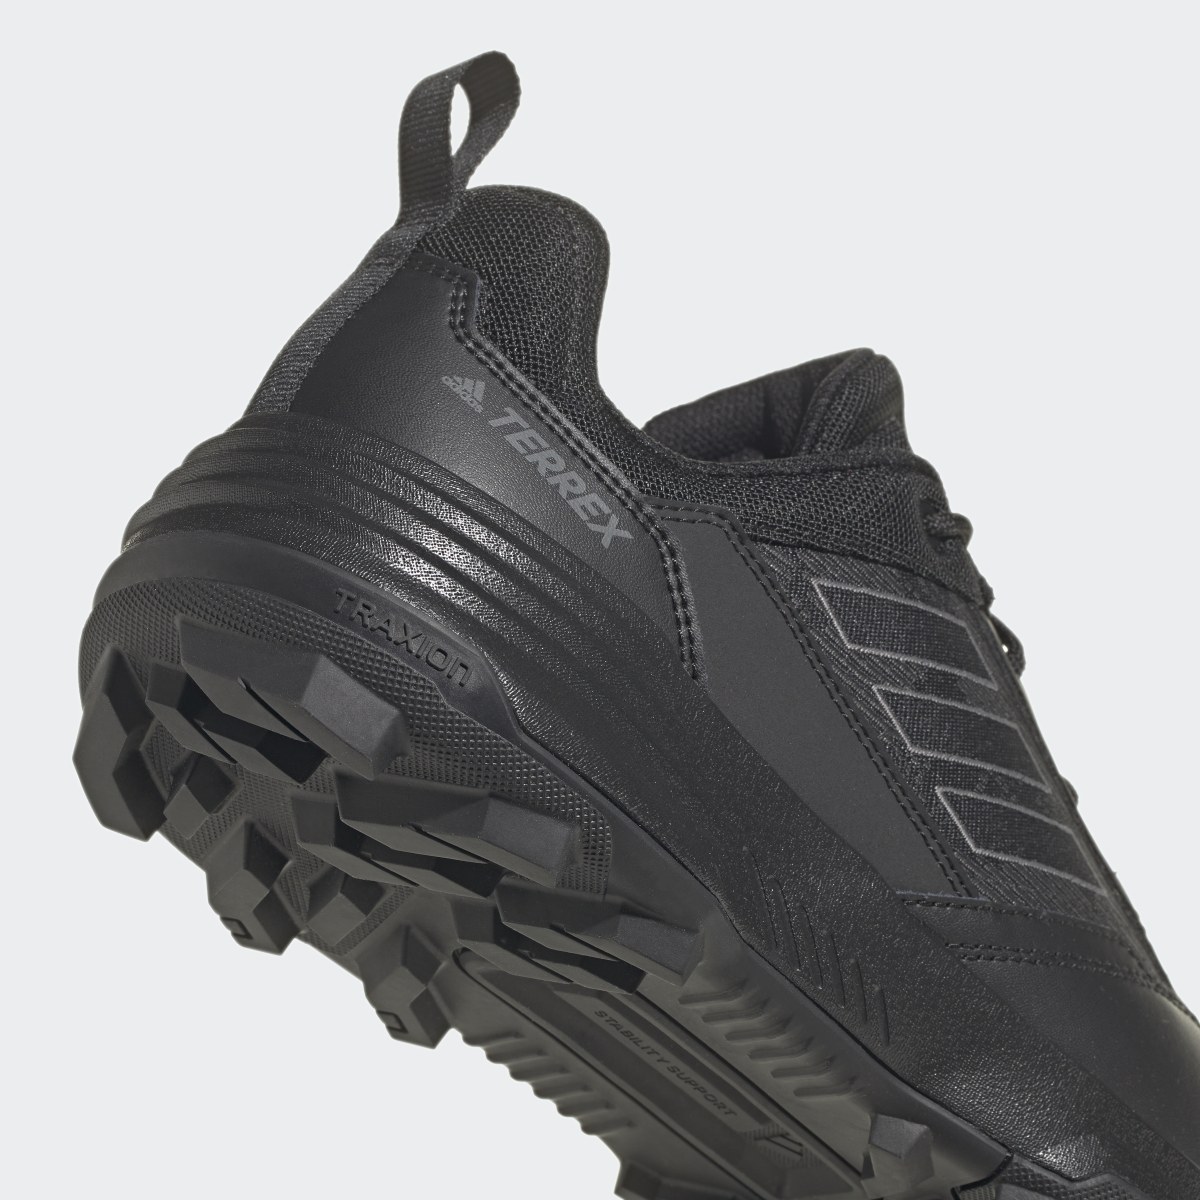 Adidas Unity Leather Hiking Shoes. 11